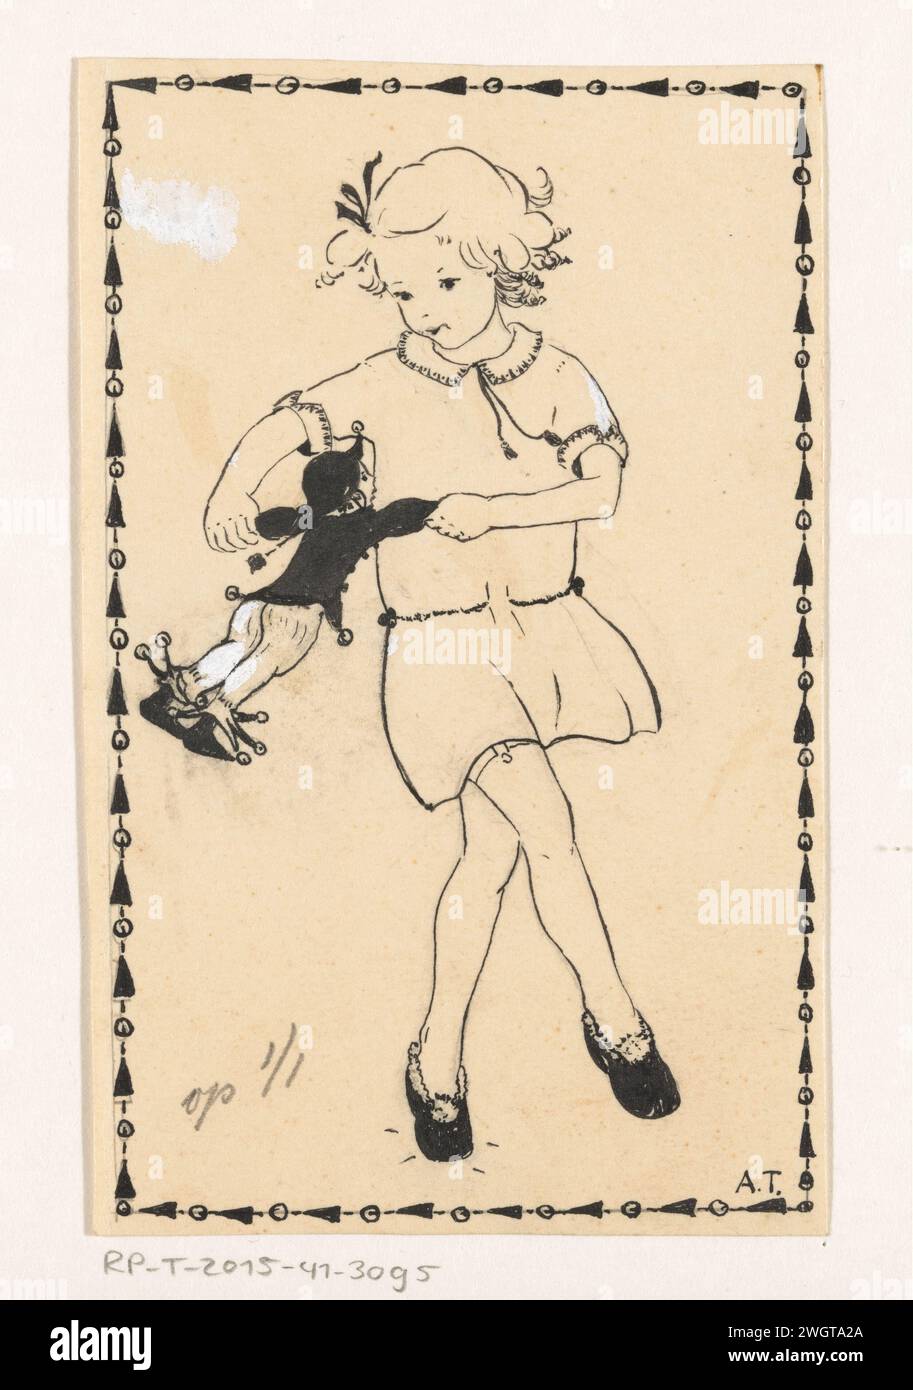 La ragazza balla con una bambola, A. Tinbergen, c. 1925 - c. 1935 disegnando la ragazza tiene la bambola, vestita con il costume di Arlecchino, su entrambe le mani. carta. Inchiostro India (inchiostro). matita. pennarello/spazzolina (bambino tra bambino e bambino). (giocando con) bambole Foto Stock